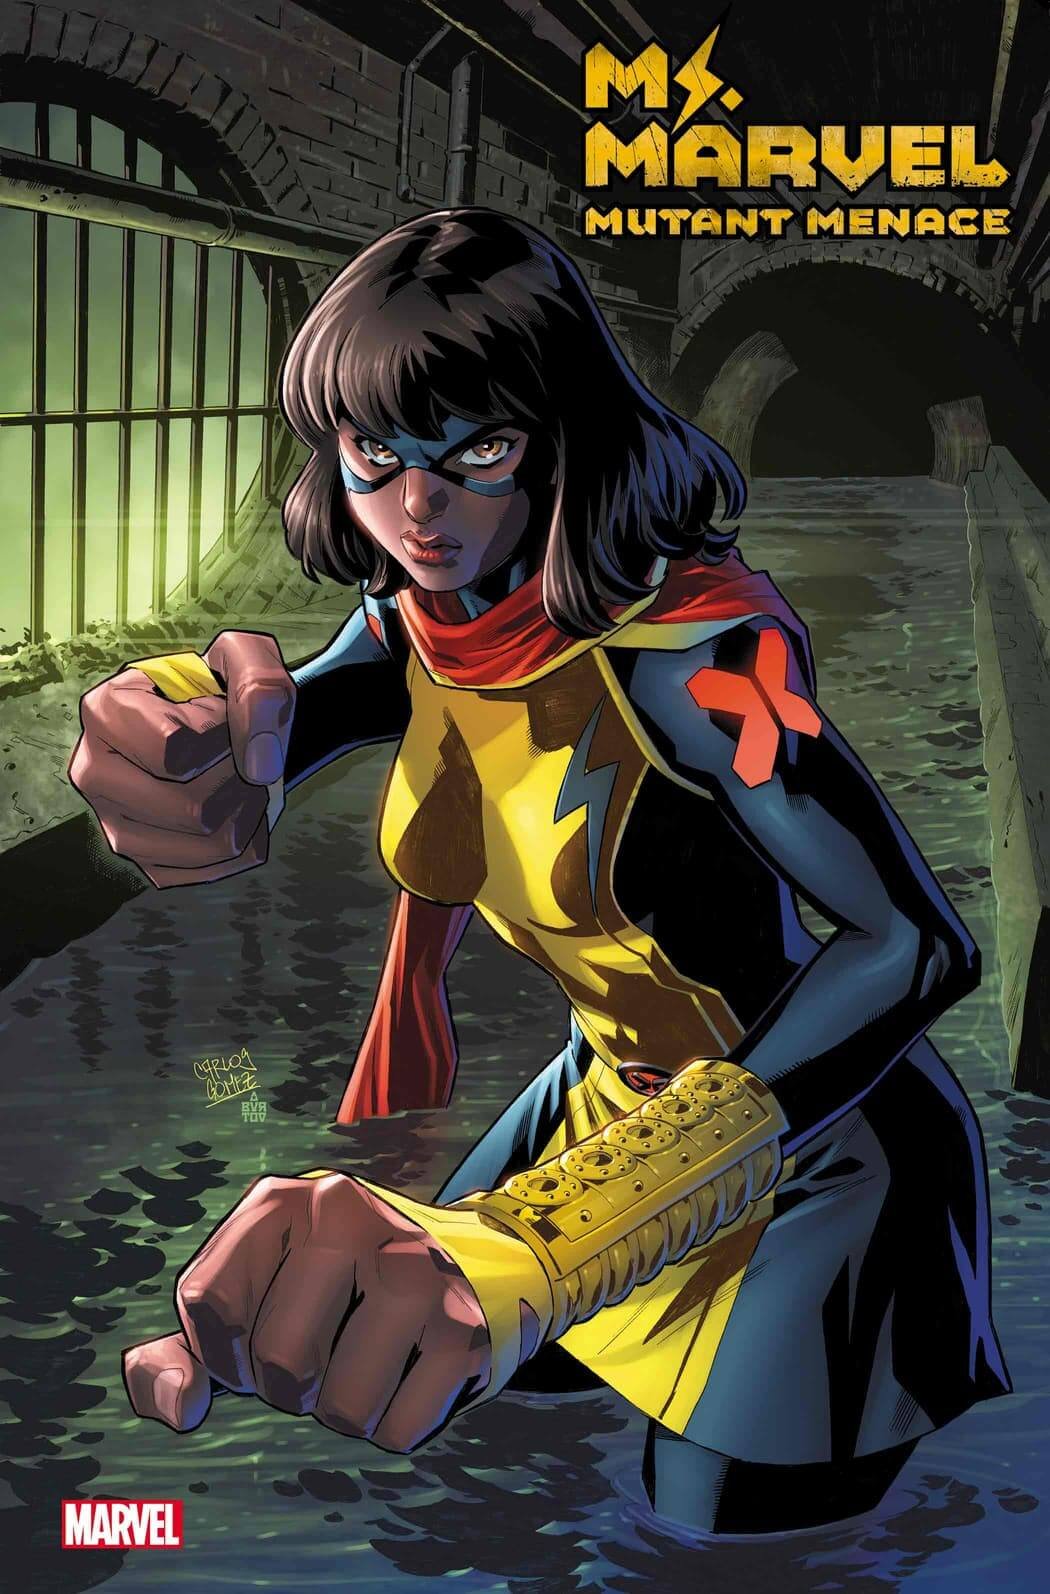 Couverture de Ms Marvel : Mutant Menace 1 par Carlos Gomez, la nouvelle mini mutante dédiée à Kamala Khan.